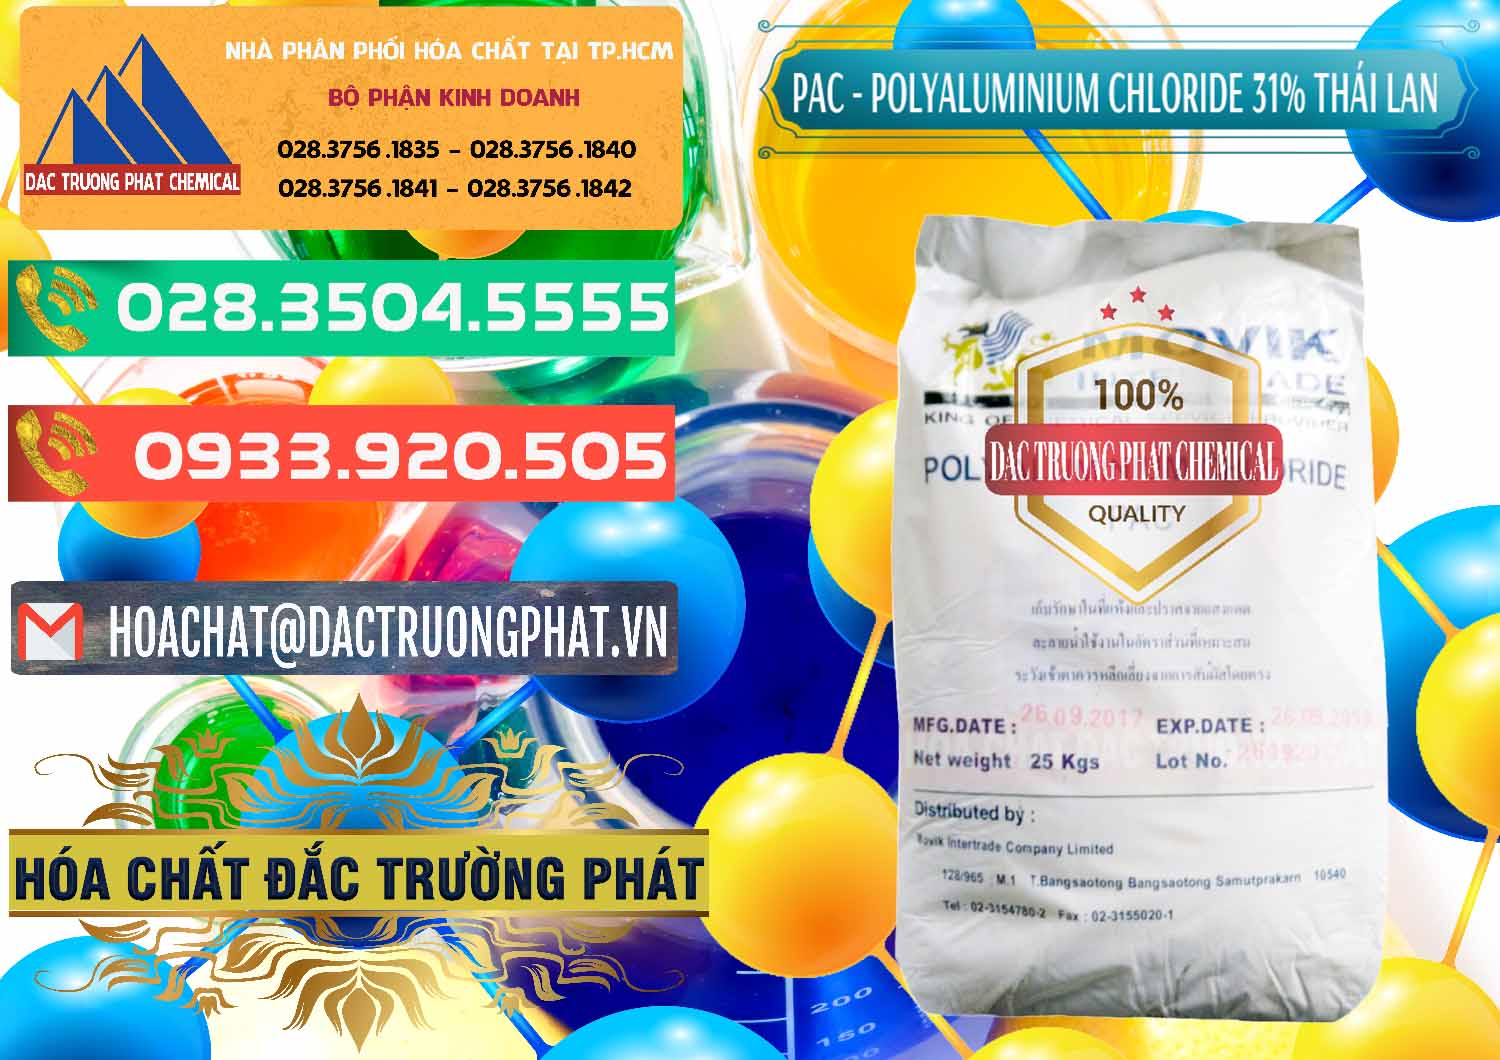 Công ty chuyên bán và cung cấp PAC - Polyaluminium Chloride 31% Thái Lan Thailand - 0469 - Cty kinh doanh và phân phối hóa chất tại TP.HCM - congtyhoachat.com.vn